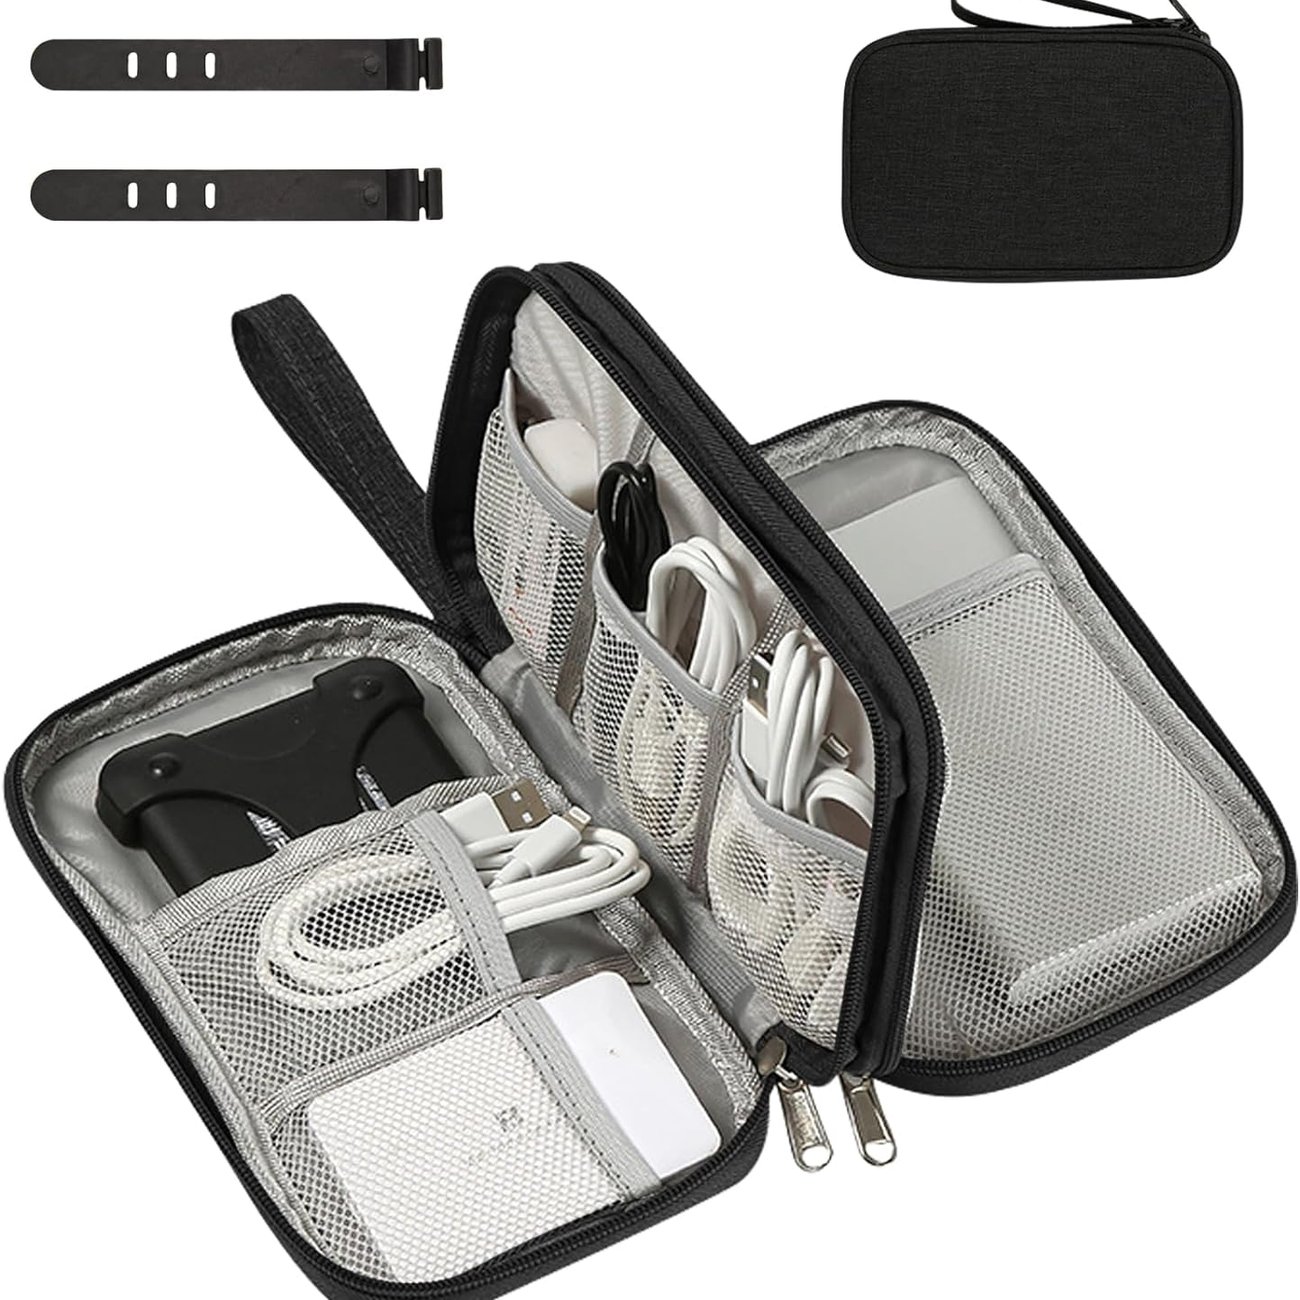 OdiuK Kabeltasche Elektronische Tasche Universal Kabelorganizer Tasche mit 2 PCS Drahtbinder,